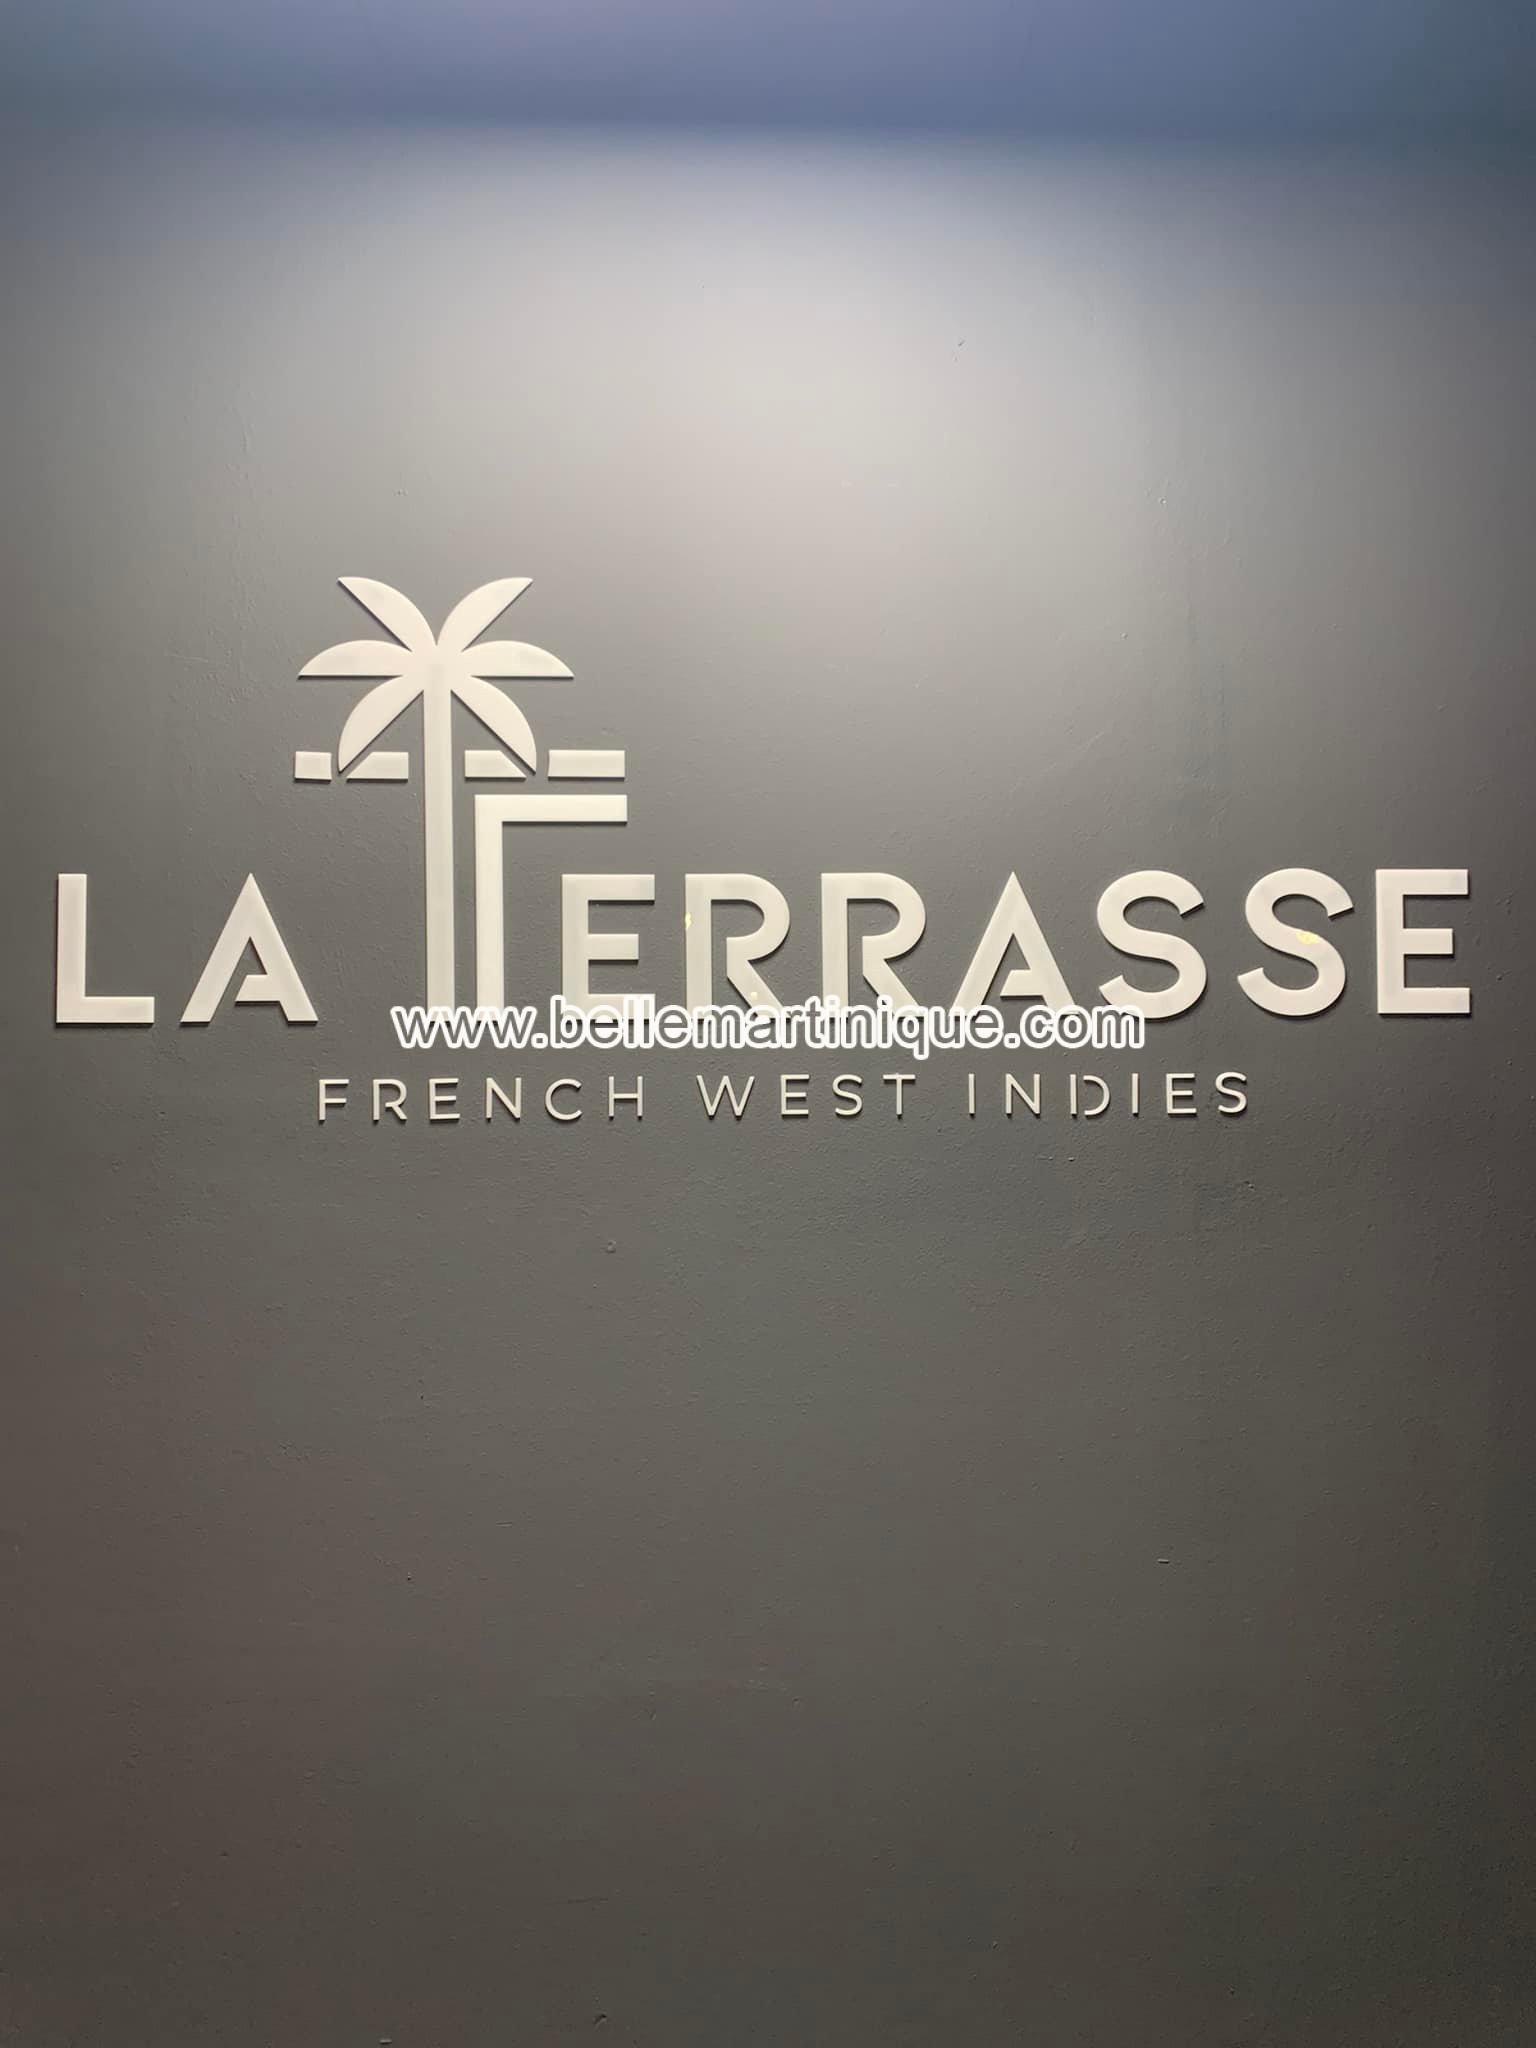 La Terrasse - French West Indies - Restaurant - Bar Lounge - Fort de France - Martinique - Antilles - Caraibe